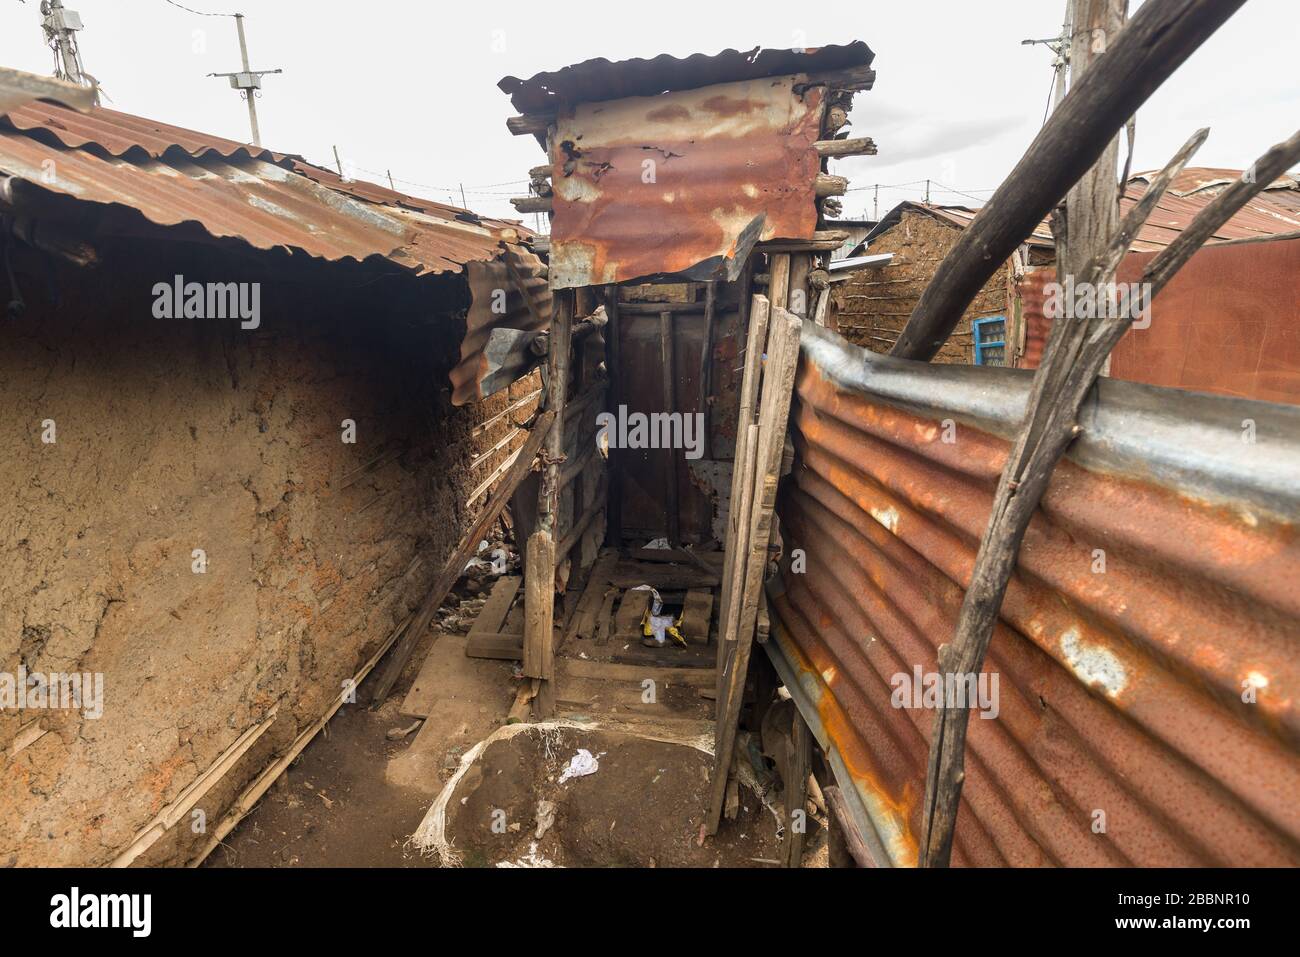 Typical slum wooden corrugated metal pit latrine or drop toilet outhouse, Nairobi, Kenya Stock Photo